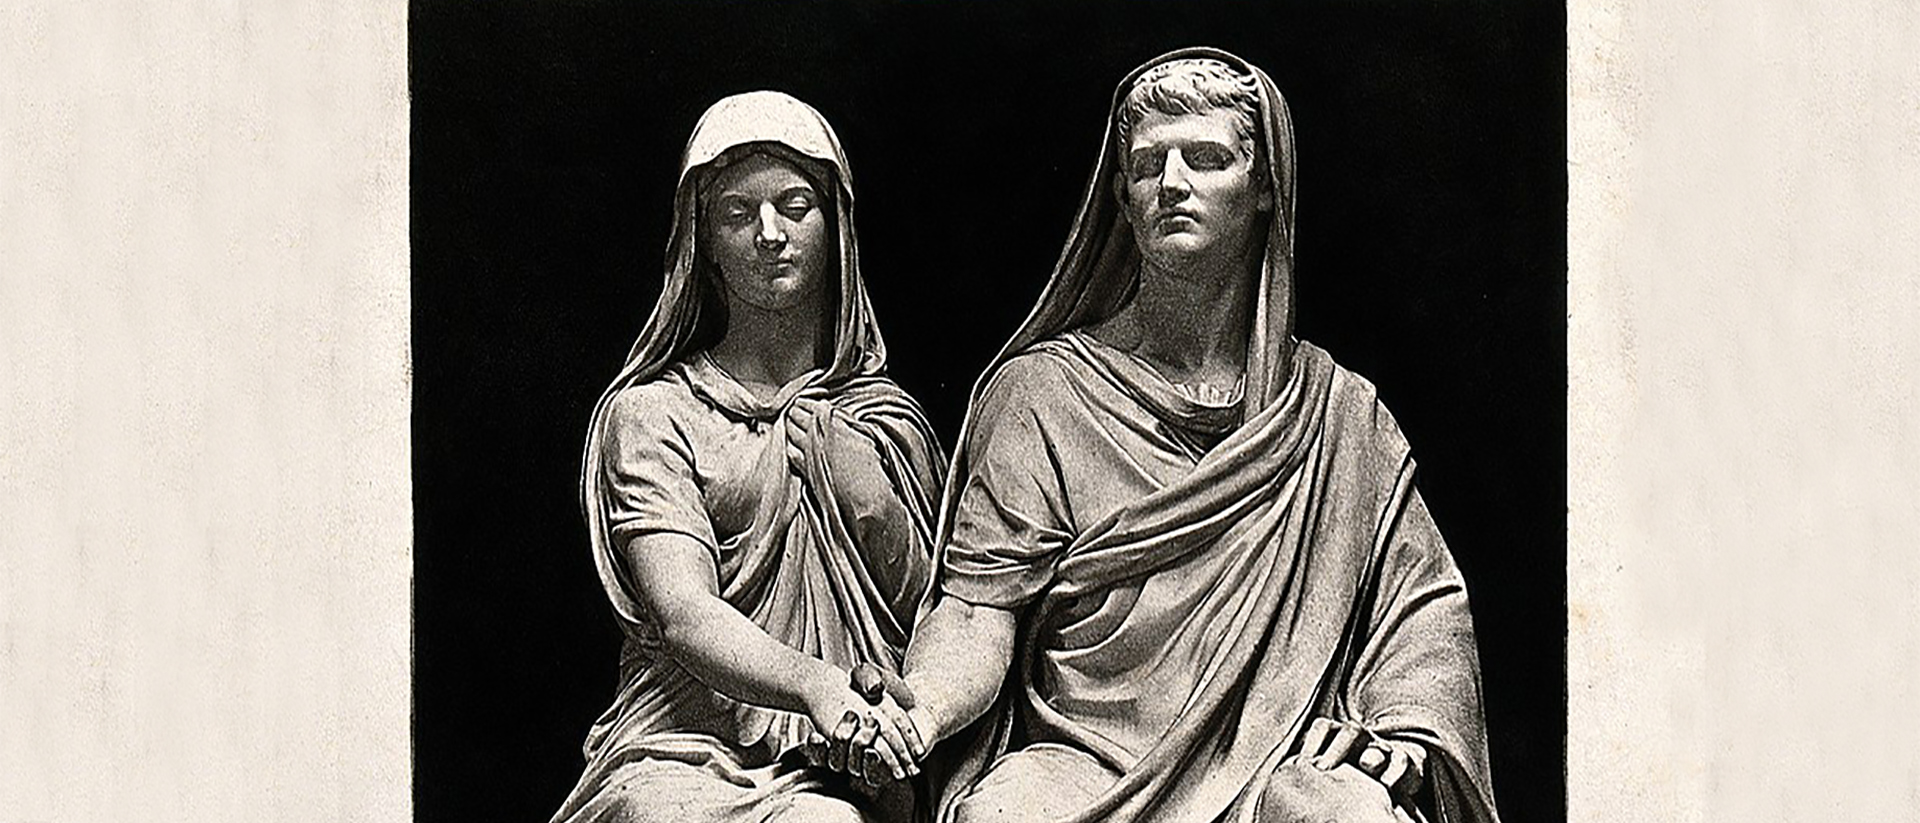 Le mariage romain | Héliographie par E. Guillame - Arents / Wellcome Collection 